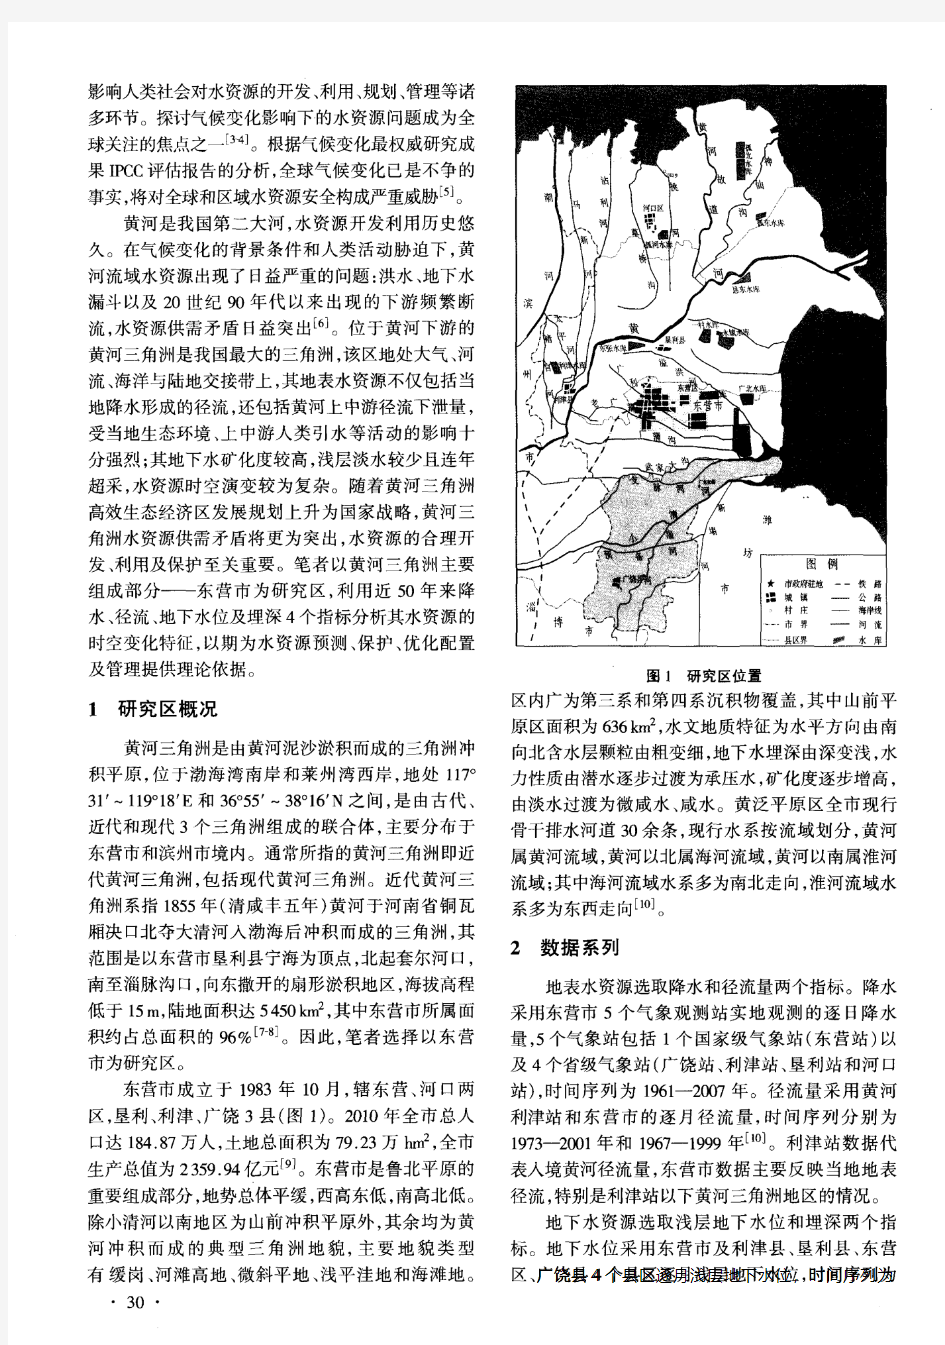 黄河三角洲1961--2000年水资源时空变化特征